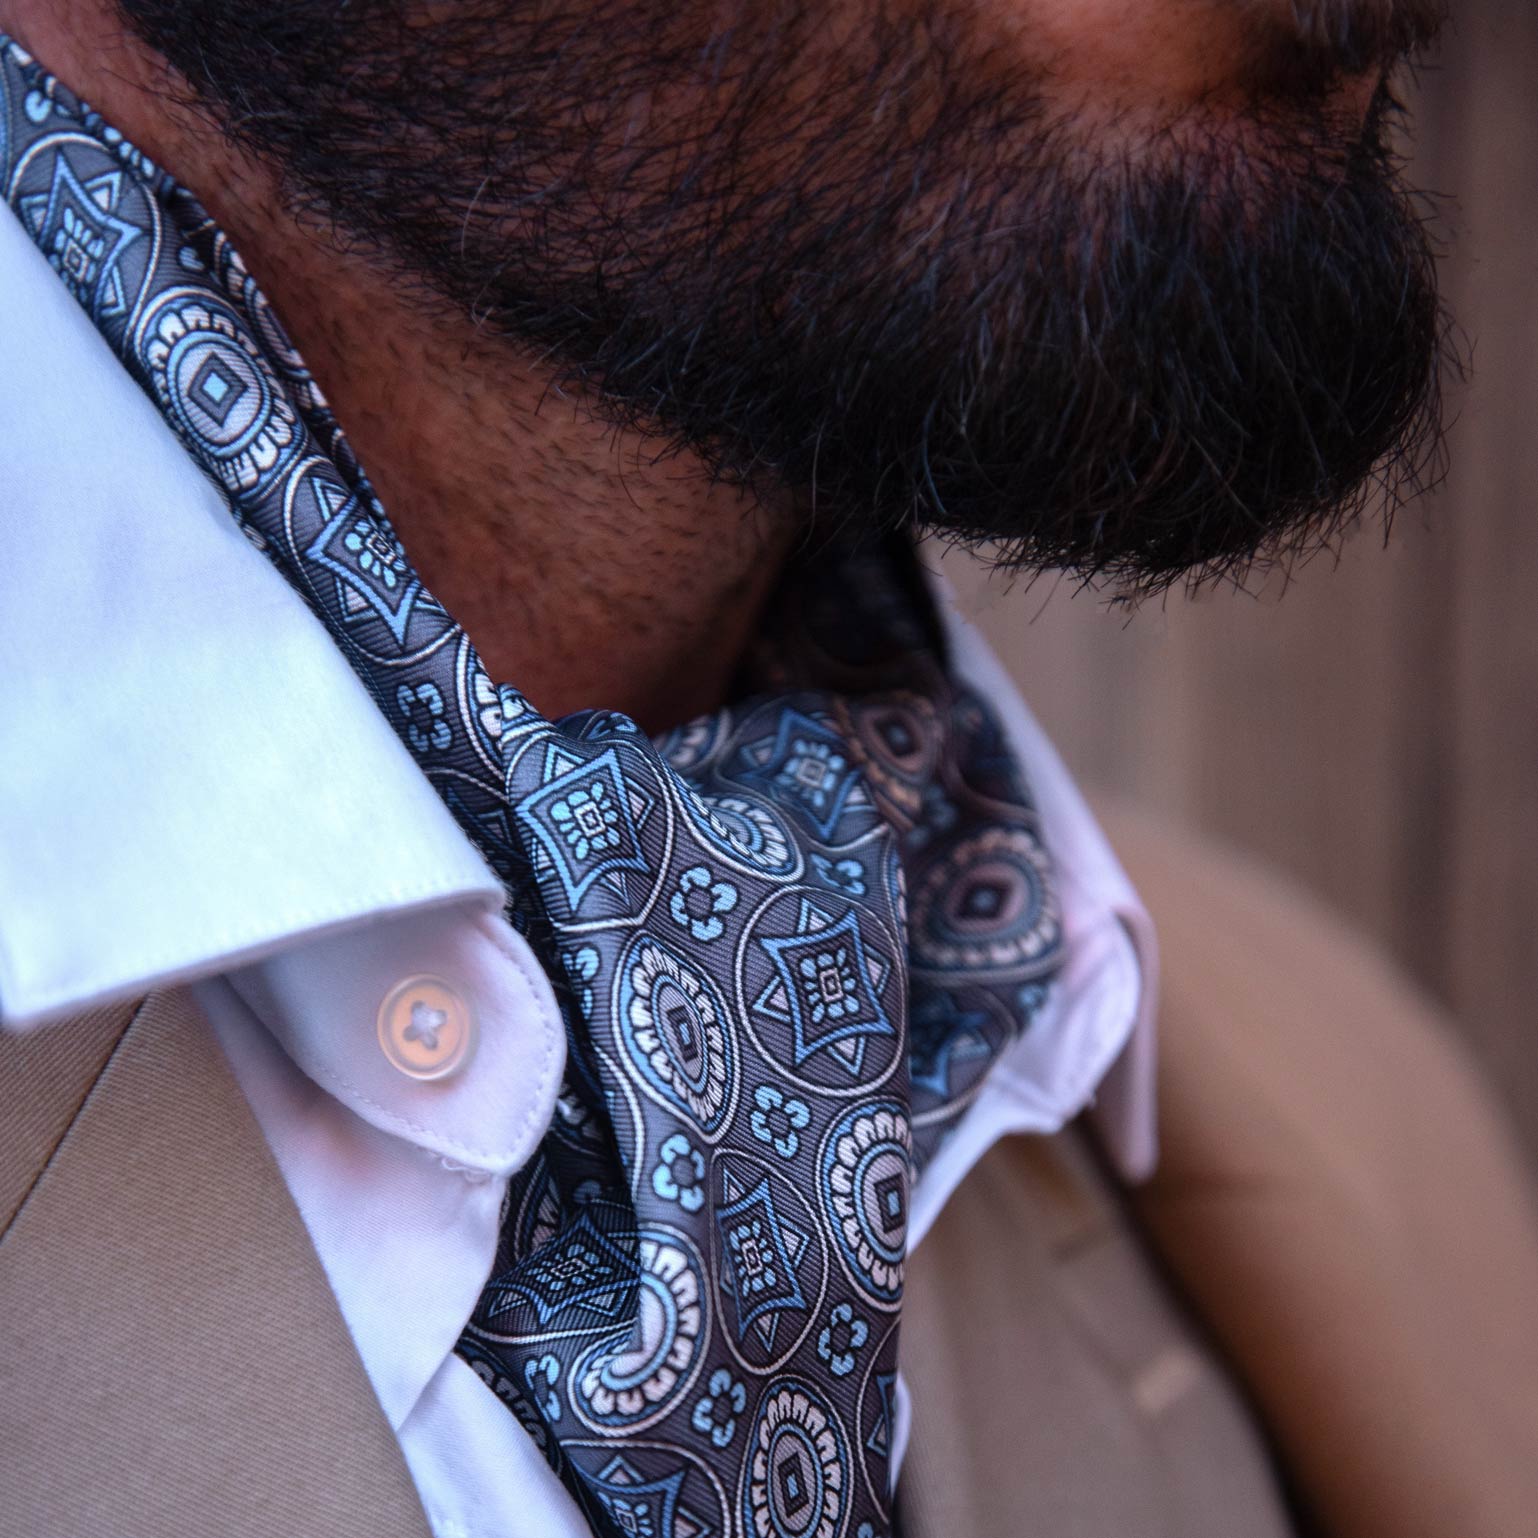 ascot cravat necktie from Italy